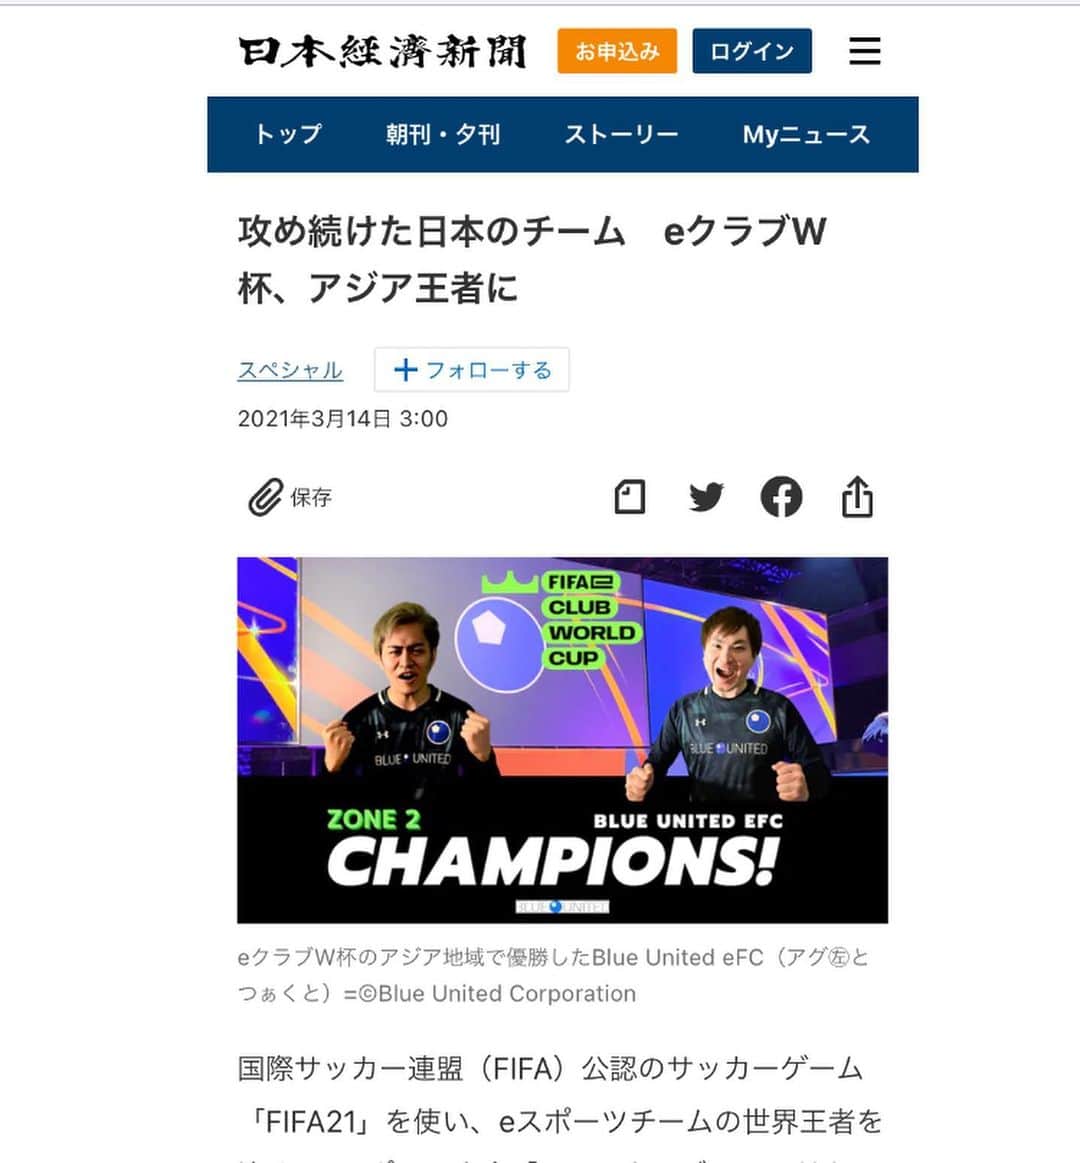 田中輝和のインスタグラム：「日本経済新聞さん、ゲキサカさんその他、記事にしていただいた媒体様ありがとうございます🙇‍♂️  最近の弊社チームの活躍ぶりは凄まじい👏👏  🔹チーム🔹 ・FIFAe World Cup  zoon 2 優勝🥇 (つぁくと選手・アグ選手)  今大会はコロナの影響もあり、世界を6つのZONEに分けて、各ZONEの優勝者を決めるという変則的な大会ではありましたが、我々Blue United eFCはアジアエリアとなるZONE2にて戦い優勝、実質２年連続のアジアチャンピオンチームに。  FIFAeランキング 世界5位🔥  🔹個人🔹 ・EA SPORTS FIFA 21 Global Series East Asia Qualifier 2 準優勝 (つぁくと選手)  EA SPORTS公式の東アジア大会にて、つぁくと選手が個人戦で準優勝。  ・サッカーe日本代表 2年連続選出 (アグ選手) JFAが2021年3月9日（火）に決定した、2021年 サッカーe日本代表に弊チーム所属のアグ選手が昨年に引き続き2年連続でのサッカーe日本代表選出。  【#FGS21 東アジアランク更新】  FGS21 East Asia Qualifier 2 Runners-up #BLUeFC #つぁくと 選手 🌏総合4位/🇯🇵日本2位  FGS21 East Asia Qualifier 1 Best of 4 #BLUeFC #アグ 選手 🌏総合8位/🇯🇵日本3位」